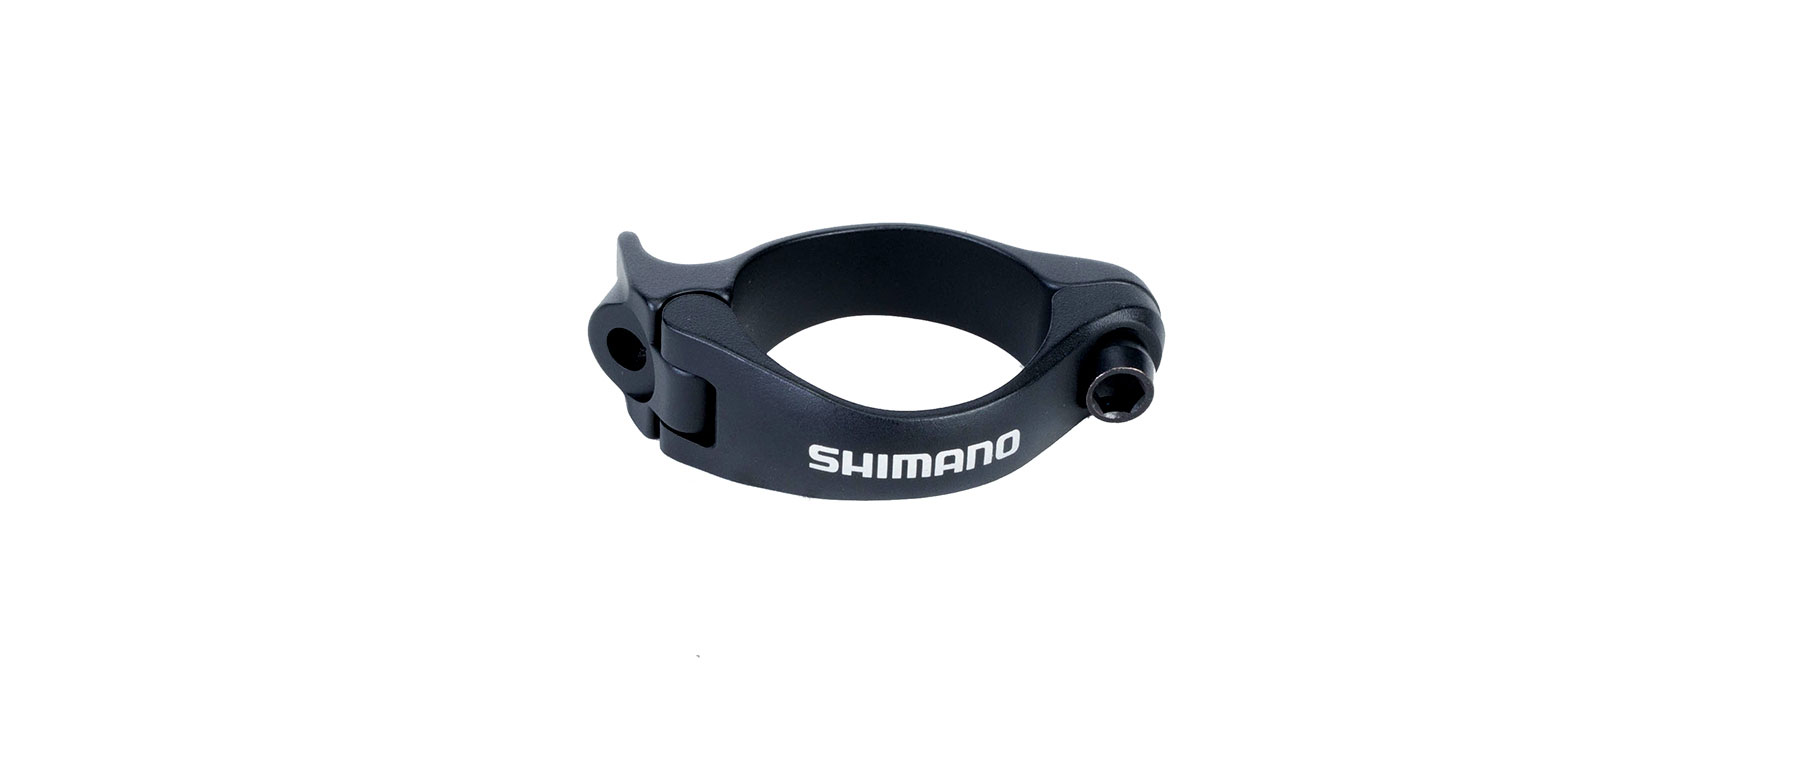 Shimano SM-AD91 Di2 Derailleur Clamp Adapter